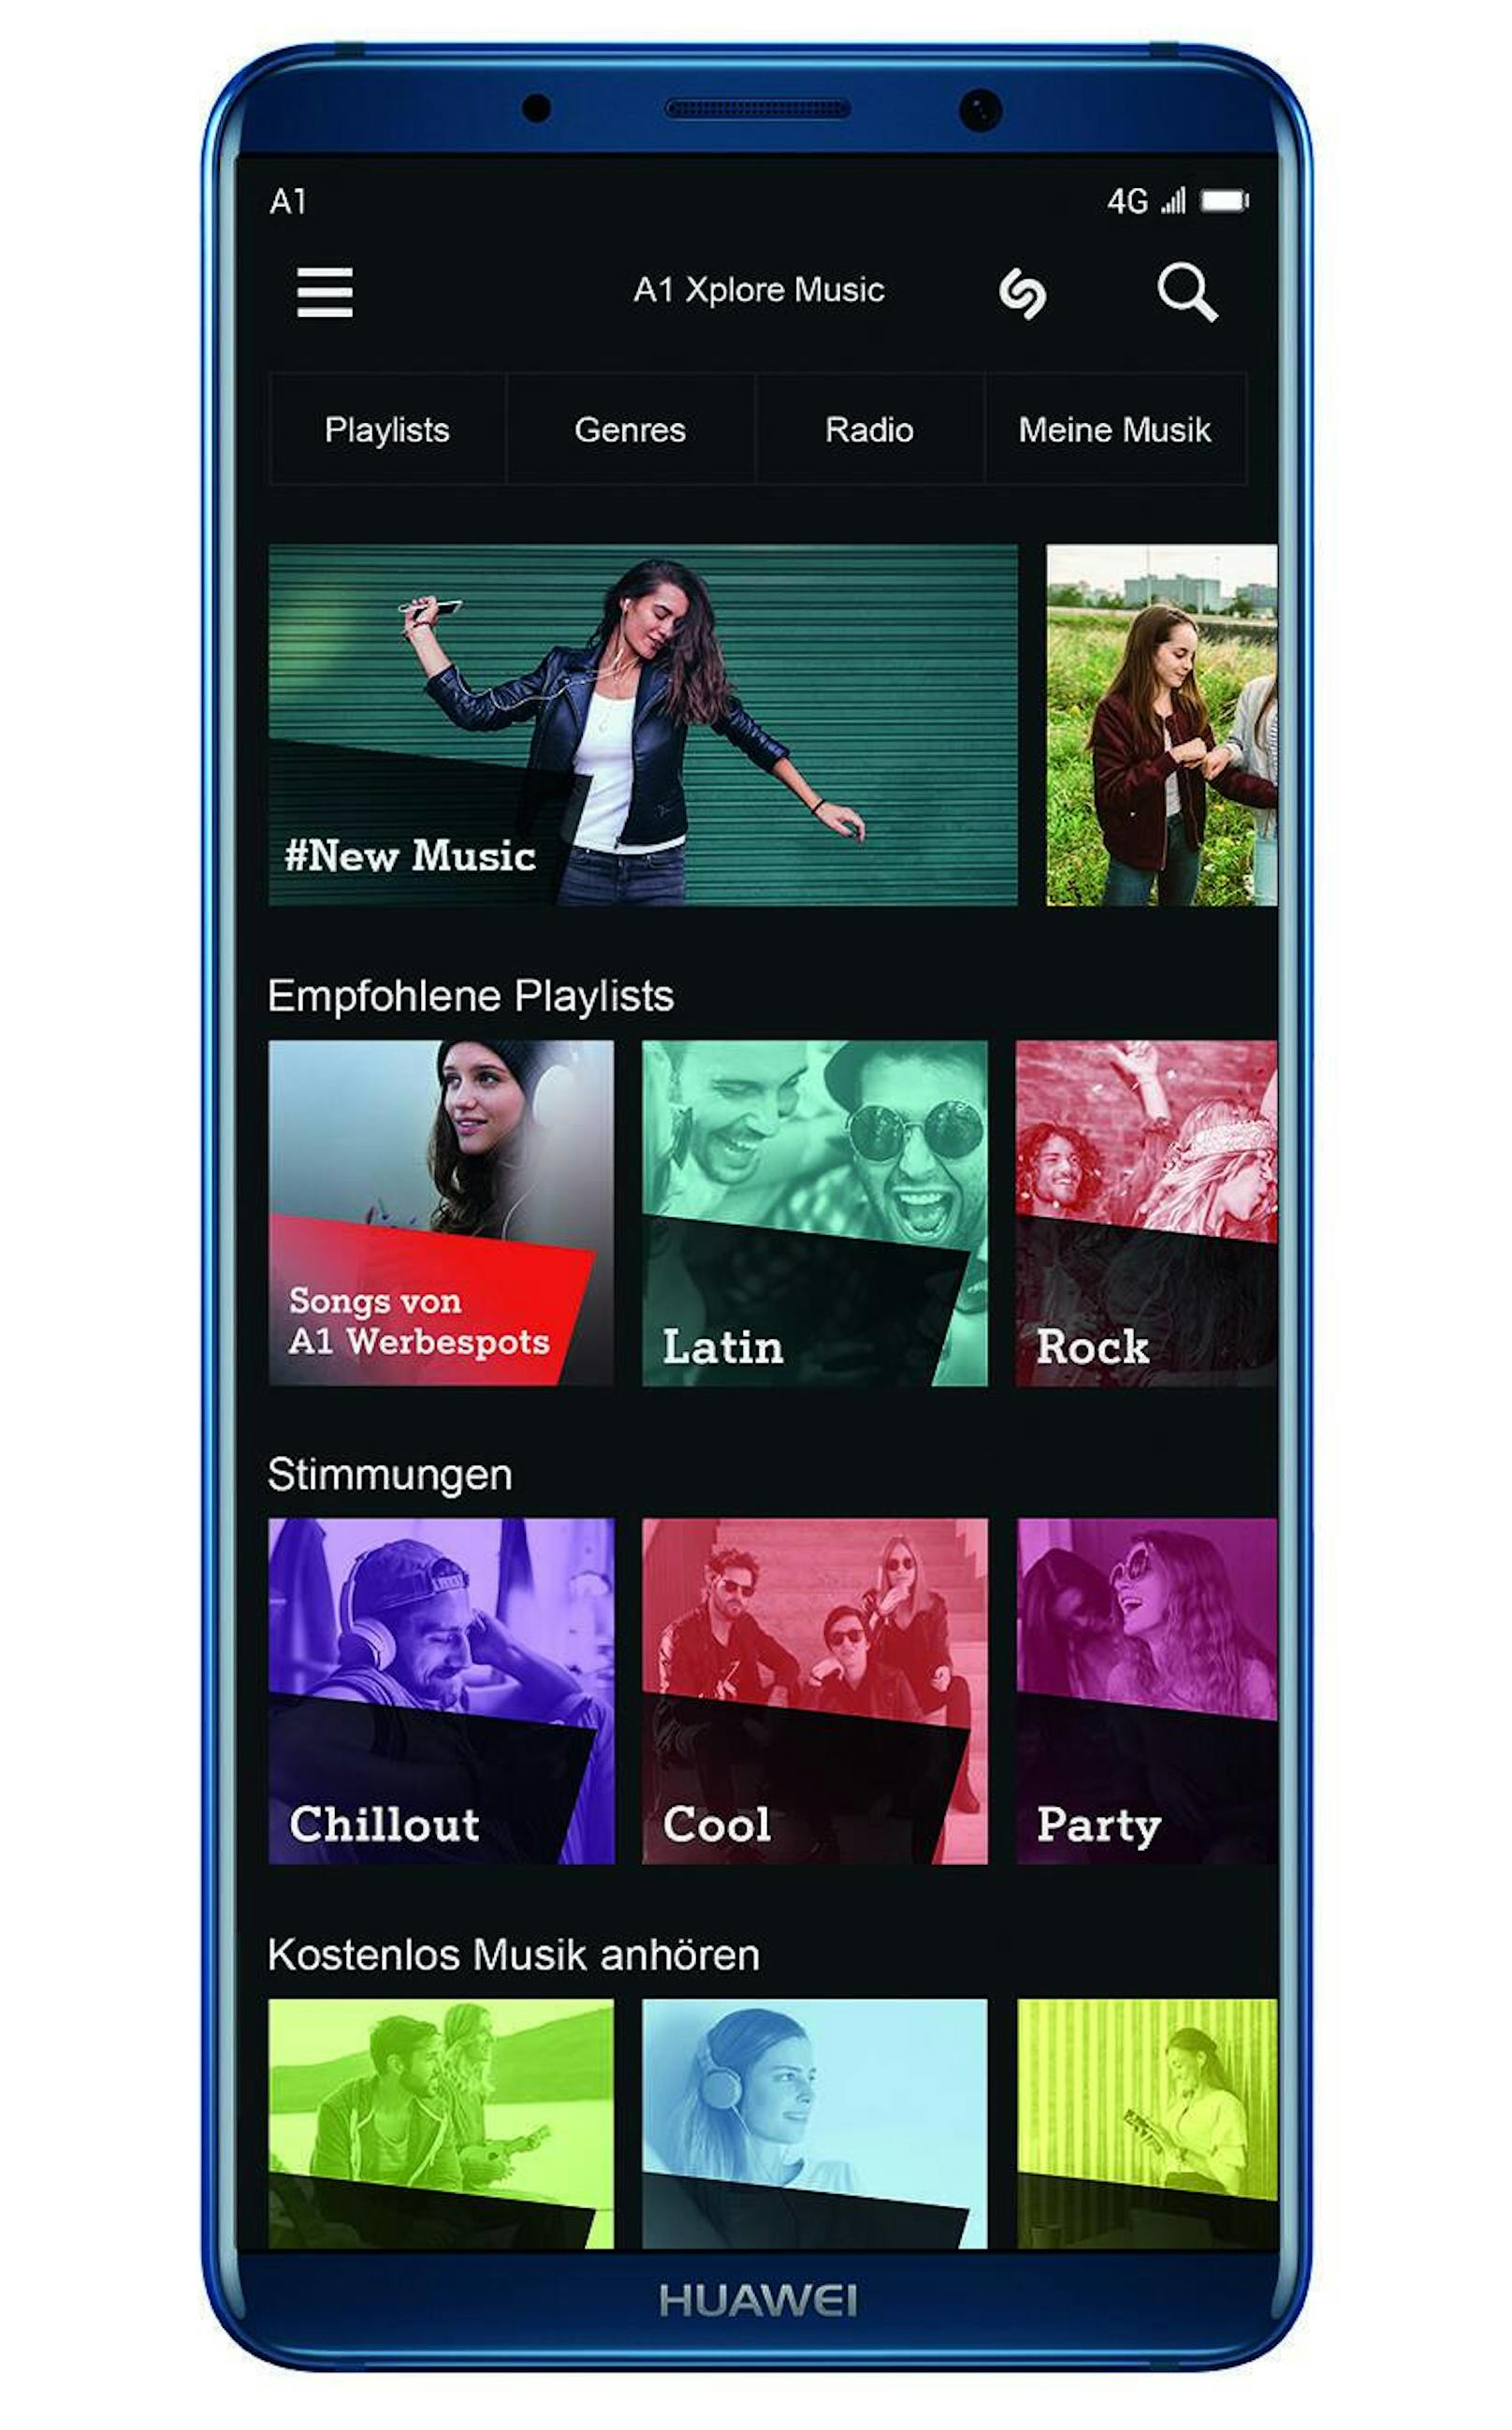 <b>02. August 2018:</b> Mit A1 Xplore Music bietet A1 seinen Kunden erstmalig eine Musik-App an, die speziell an die Bedürfnisse der Österreicher angepasst wurde. So werden die Inhalte der Playlists von einer lokalen Musik-Redaktion zusammengestellt. Die über 30 Millionen Songs und Hörbücher in A1 Xplore Music sowie die über 10.000 Live-Radio-Sender in der App können ohne Verbrauch von Datenvolumen in Österreich und innerhalb der EU gestreamt werden. Oder man lädt sich die Songs aufs Smartphone. <a href="https://www.a1.net/xplore-music">Alle Infos zu A1 Xplore Music.</a>